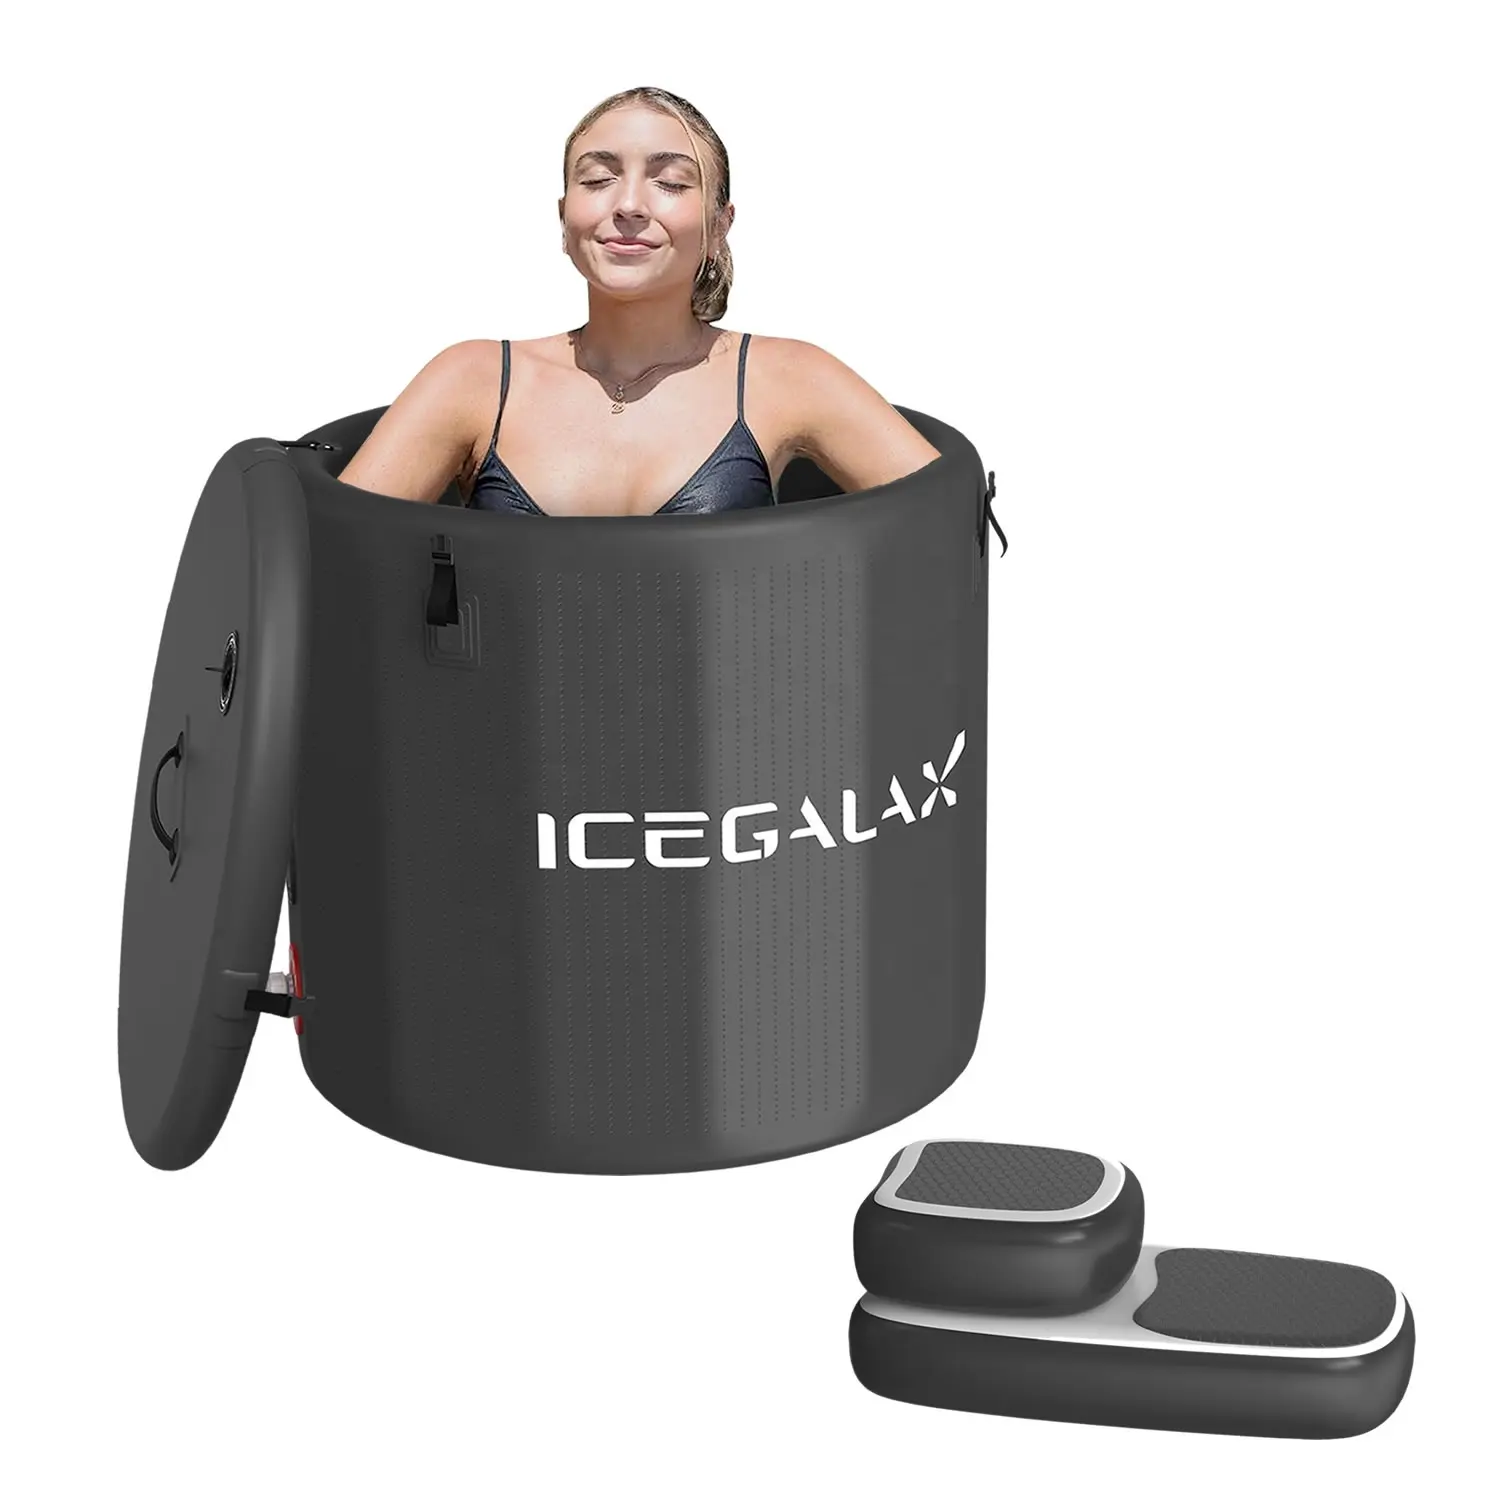 ICEGALAX 대용량 휴대용 팽창 얼음 접이식 담그는 욕조 성인 감기 치료 선수 회복을위한 플런지 욕조